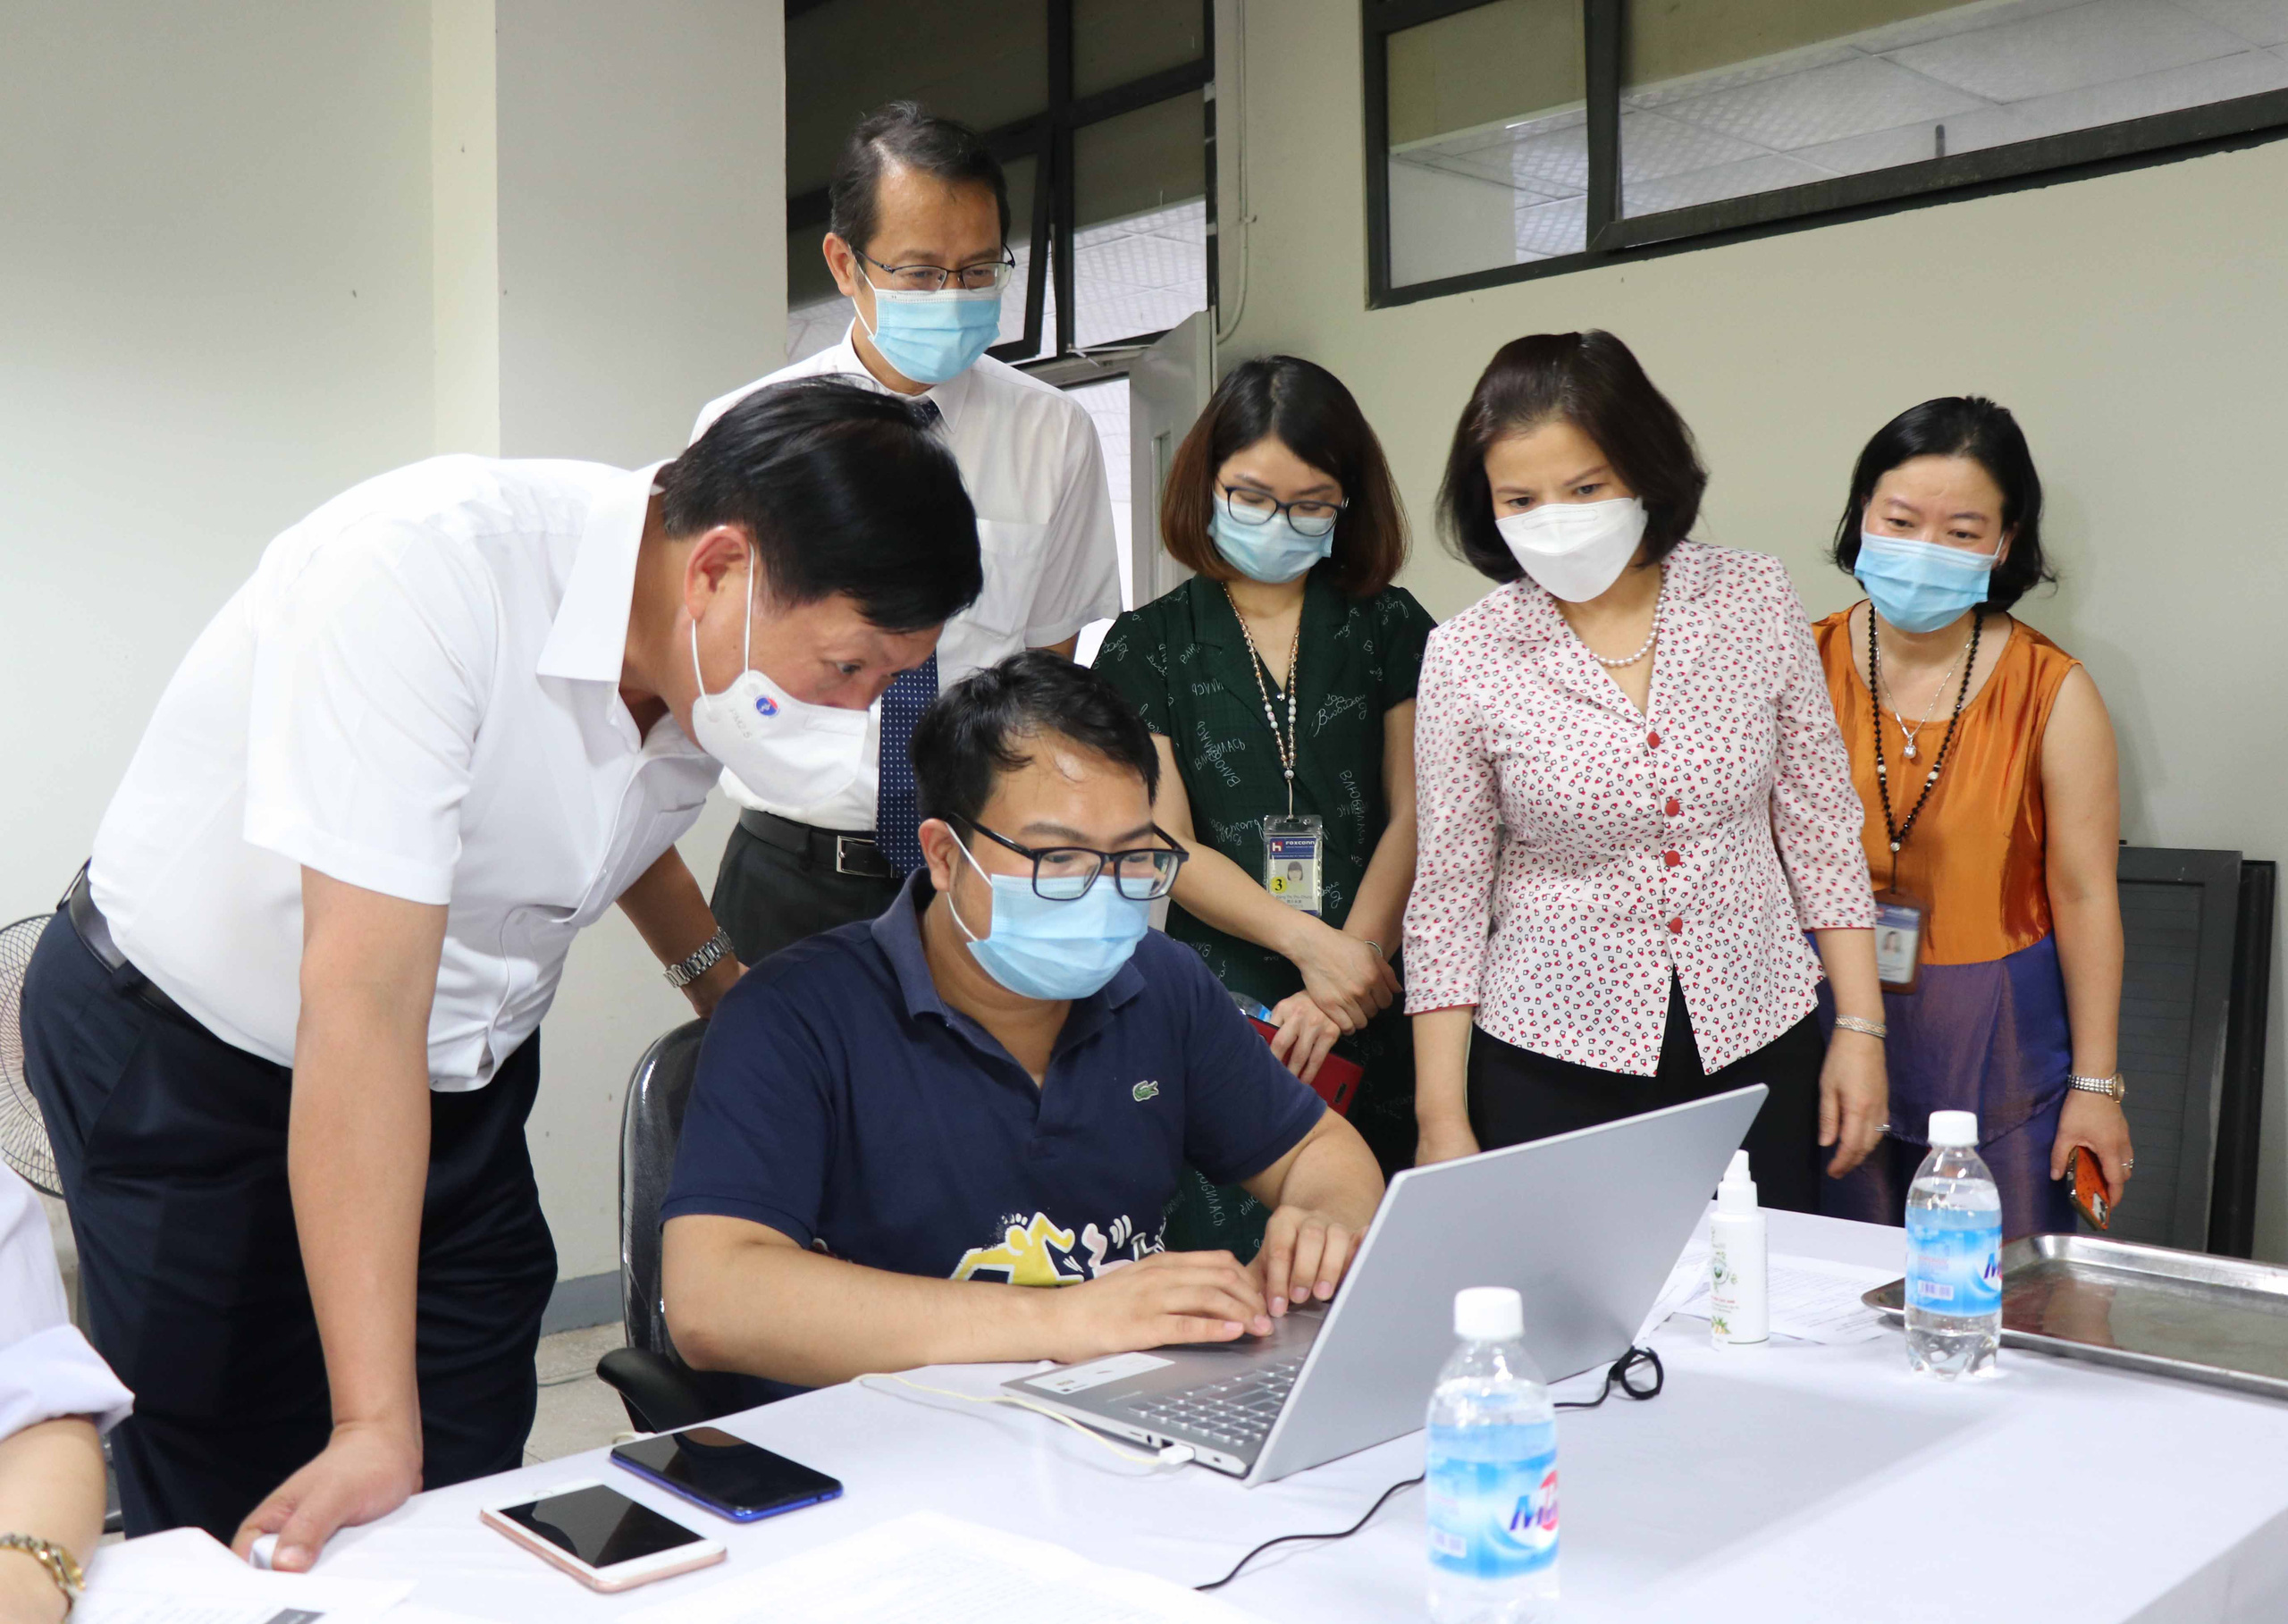 Bắc Ninh: Những công nhân đầu tiên trong khu công nghiệp tiêm vaccine phòng Covid-19 - Ảnh 3.